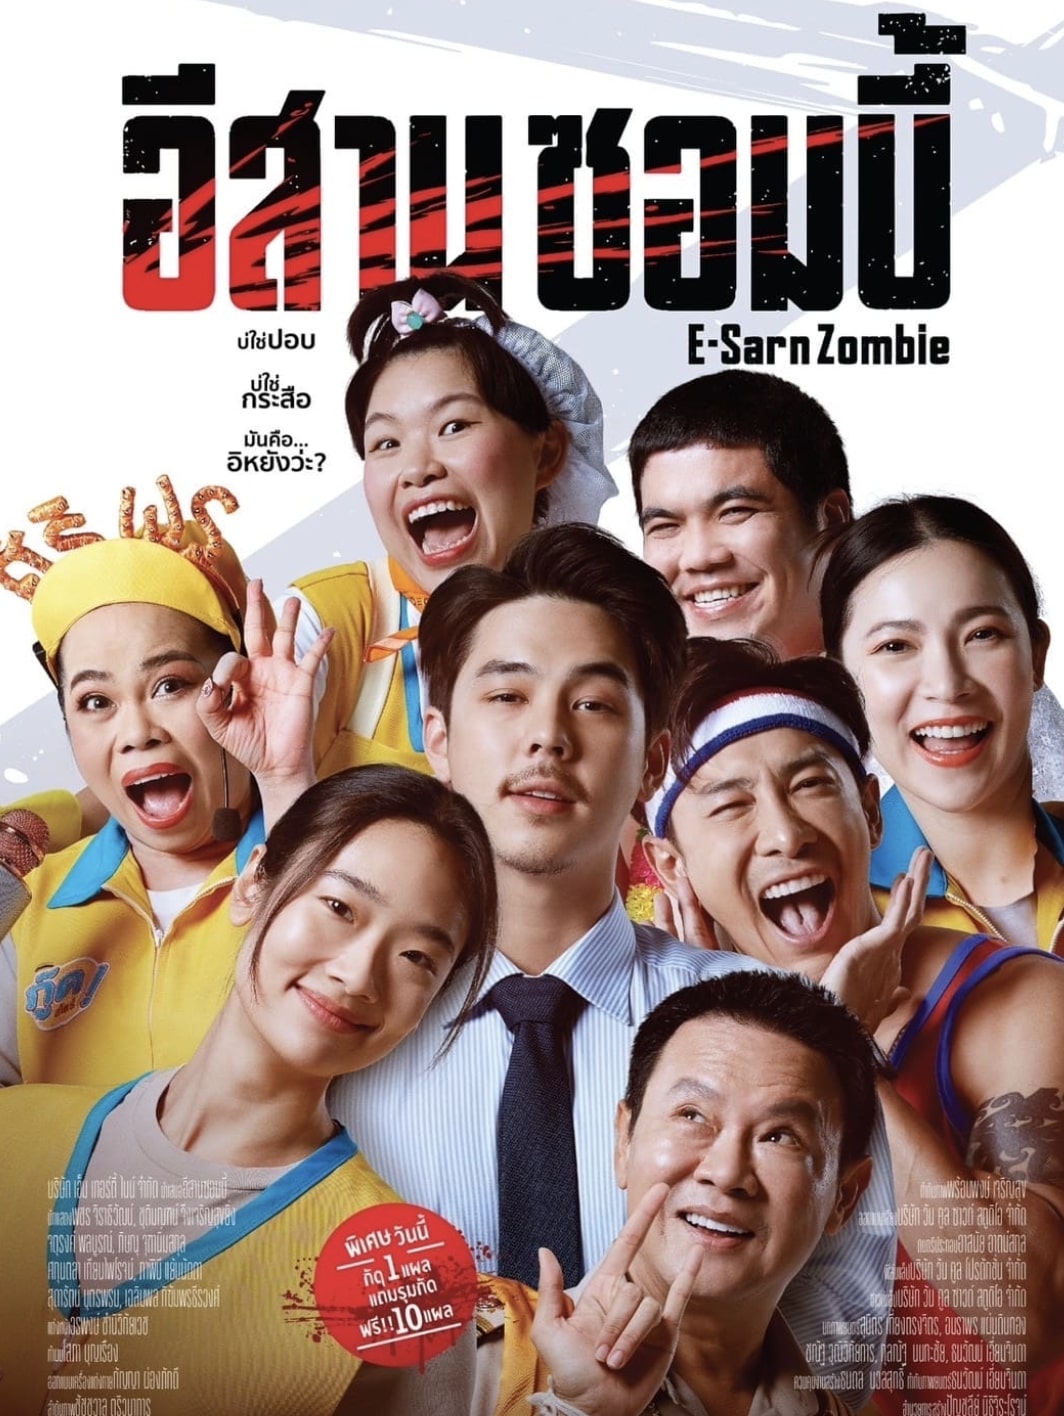 E-Sarn Zombie ดูหนังไทย